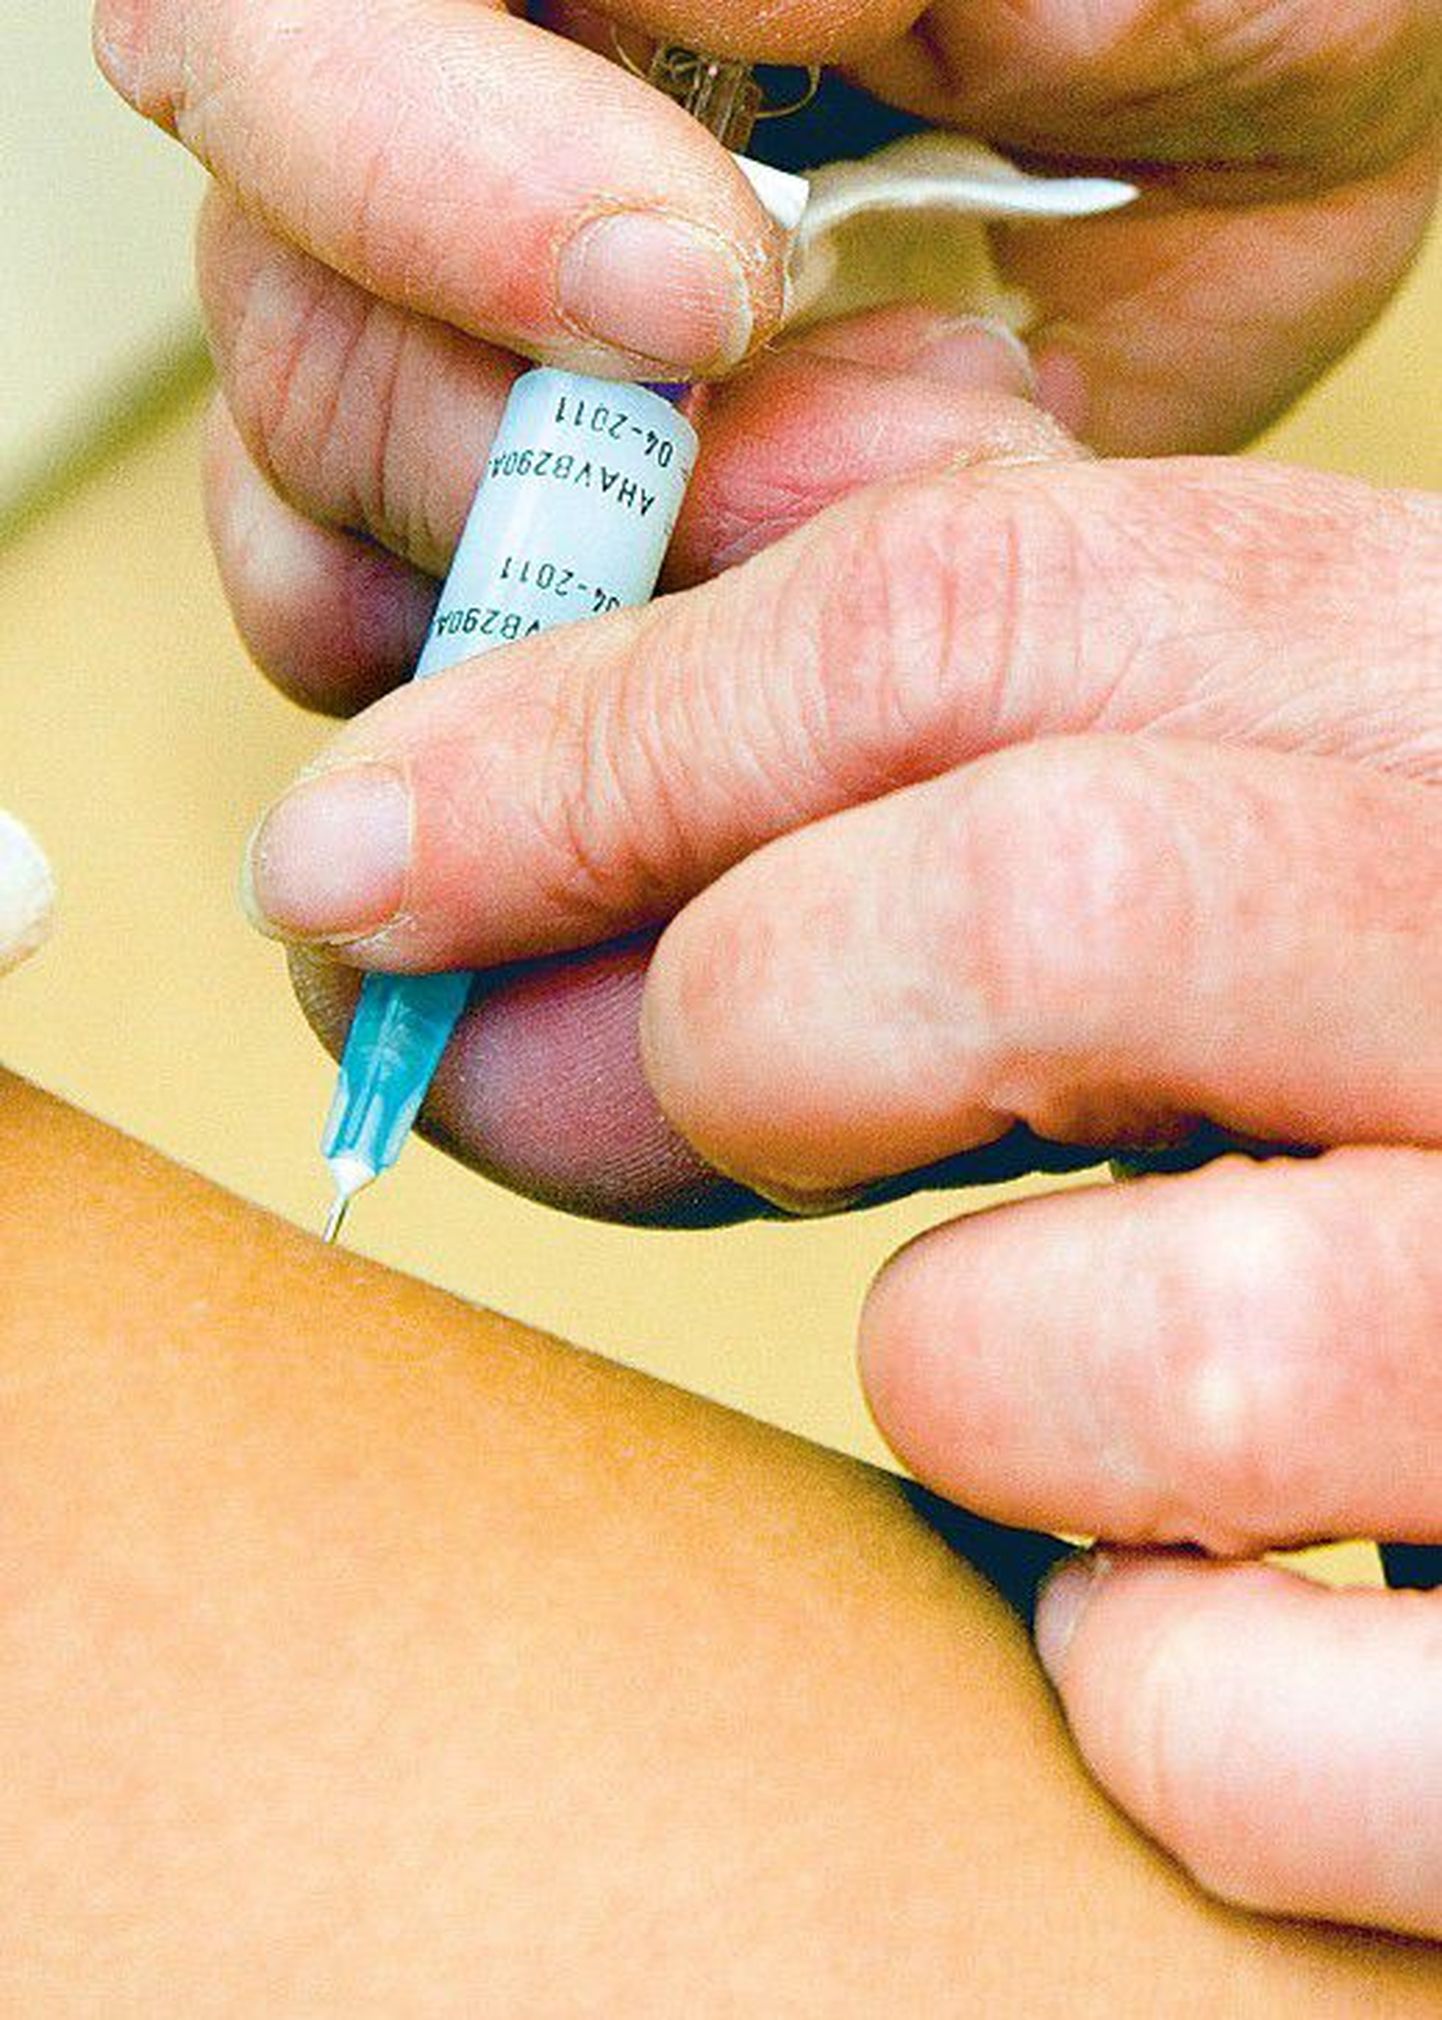 Семейные врачи утверждают, что вакцинация может вызывать осложнения у тех пациентов, способность к сопротивлению организма которых ослаблена — у детей и пожилых людей.